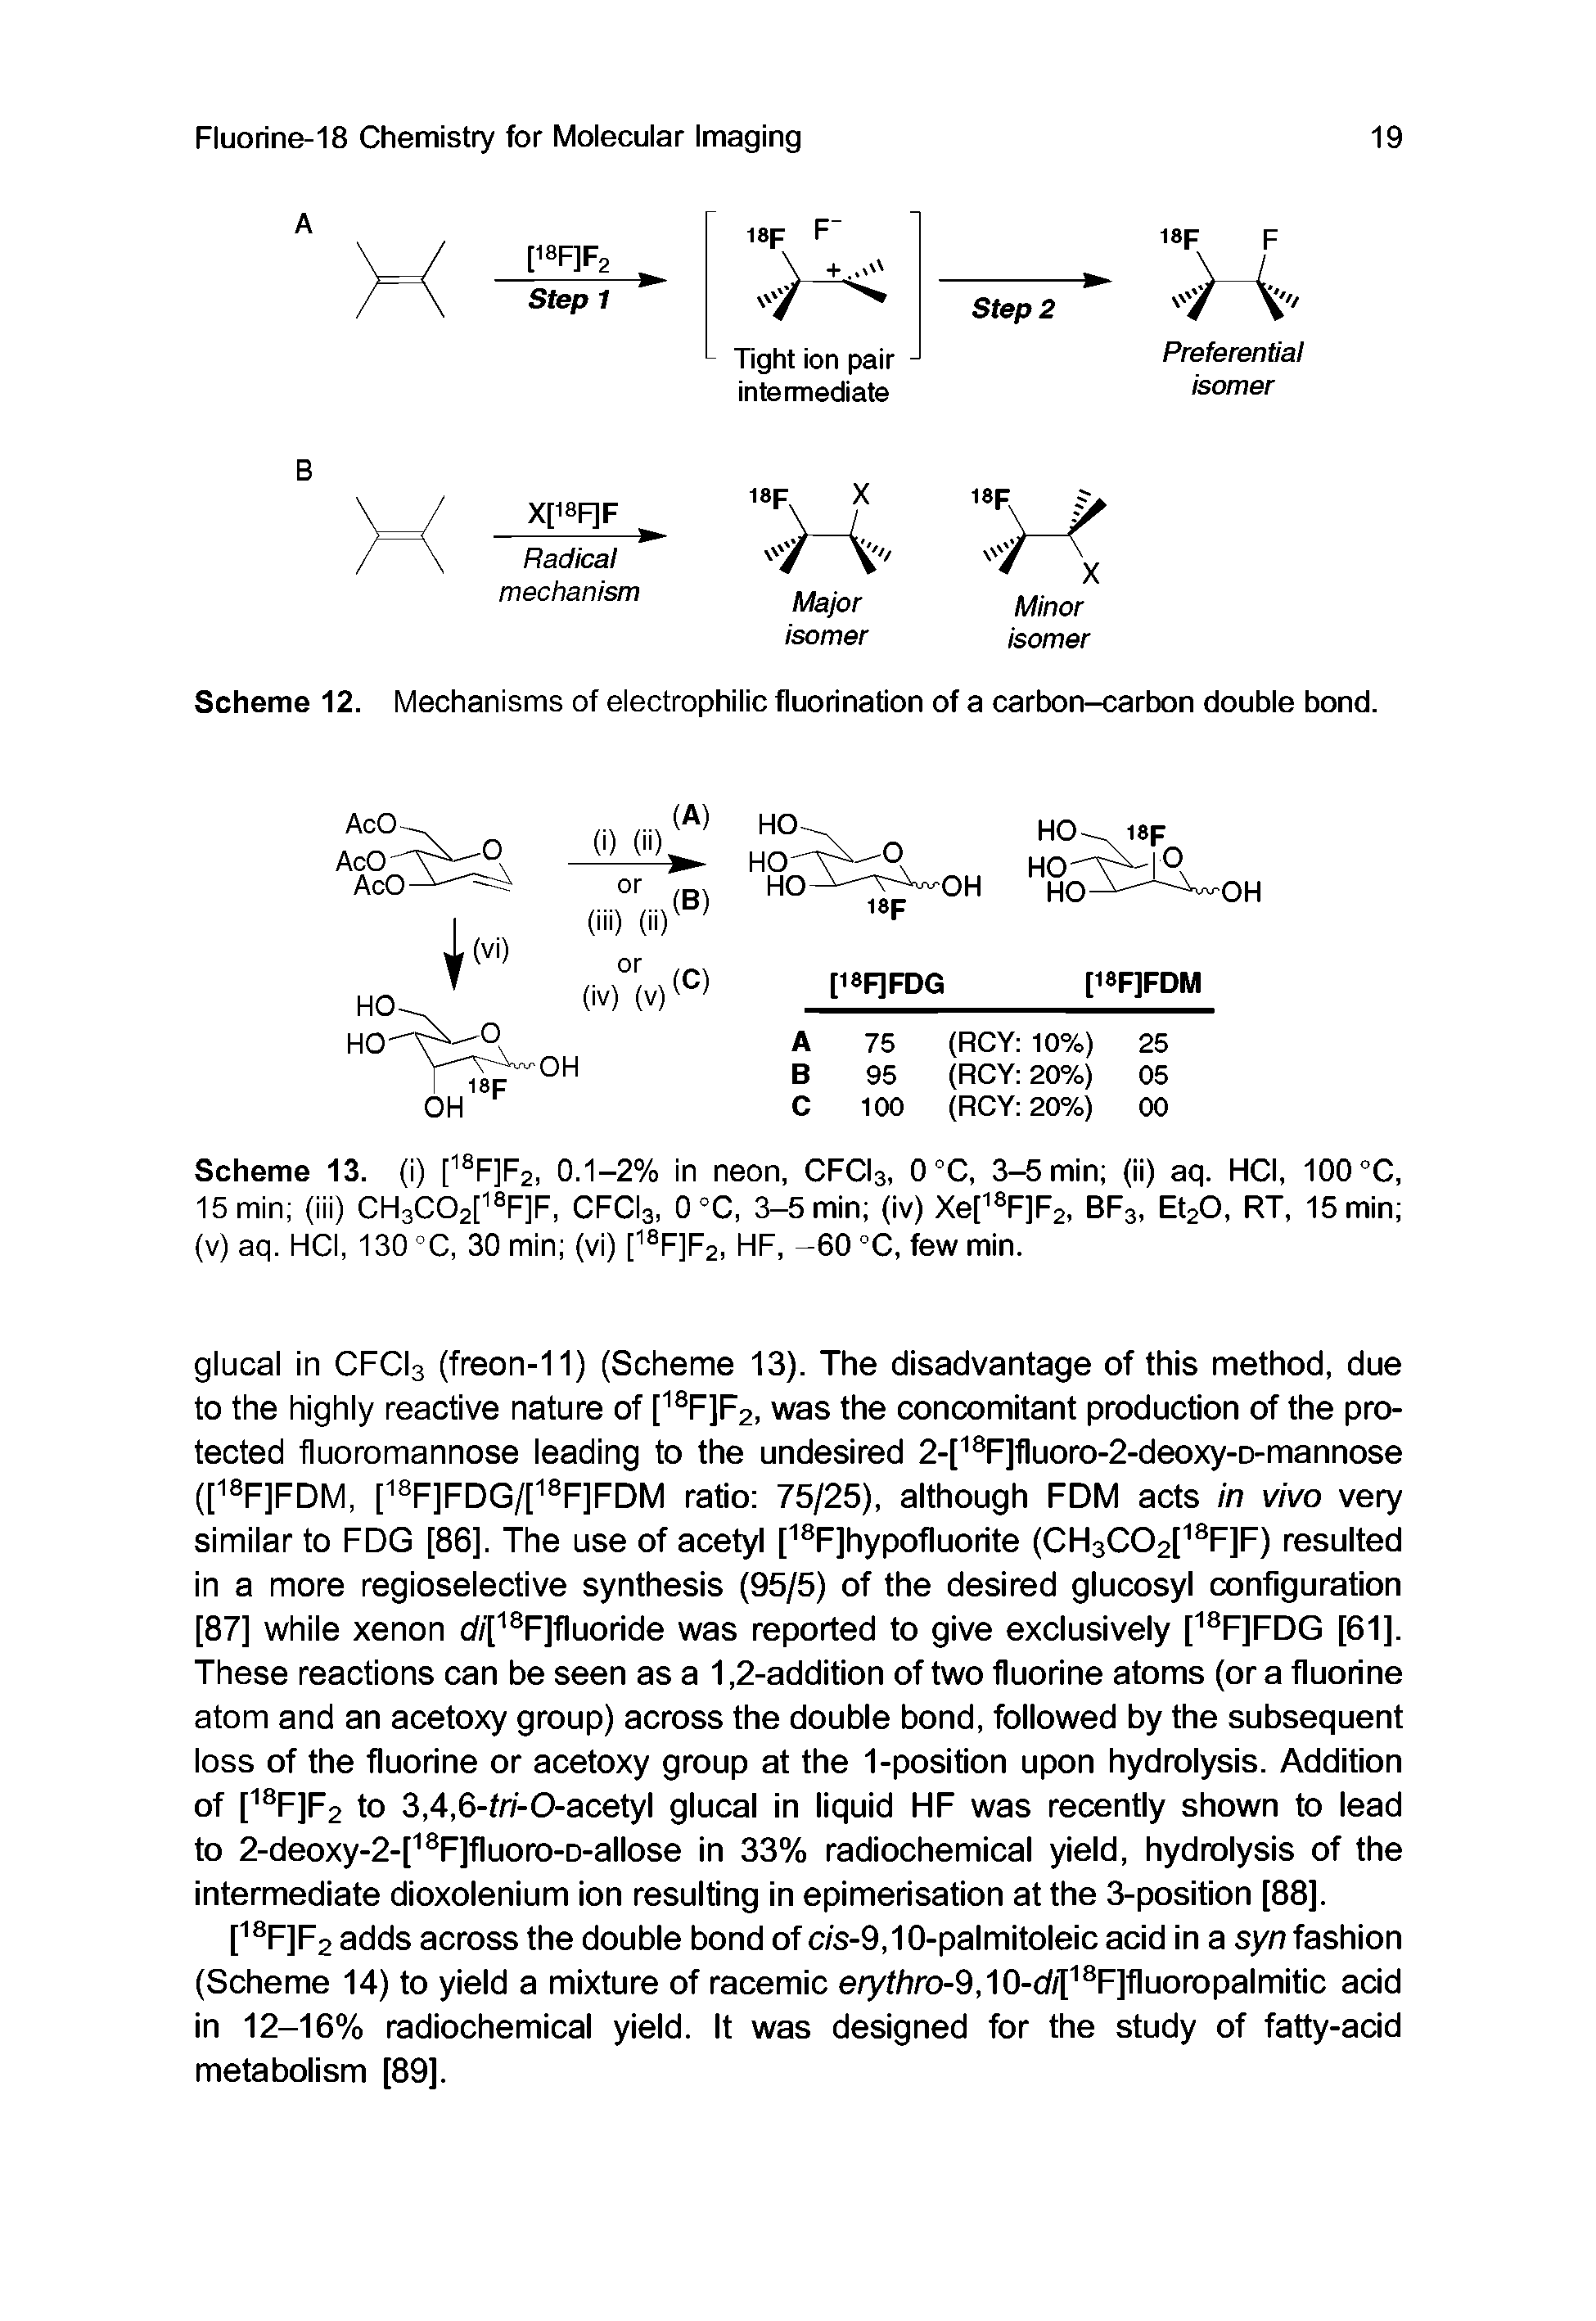 Scheme 12. Mechanisms of electrophilic fluorination of a carbon-carbon double bond.